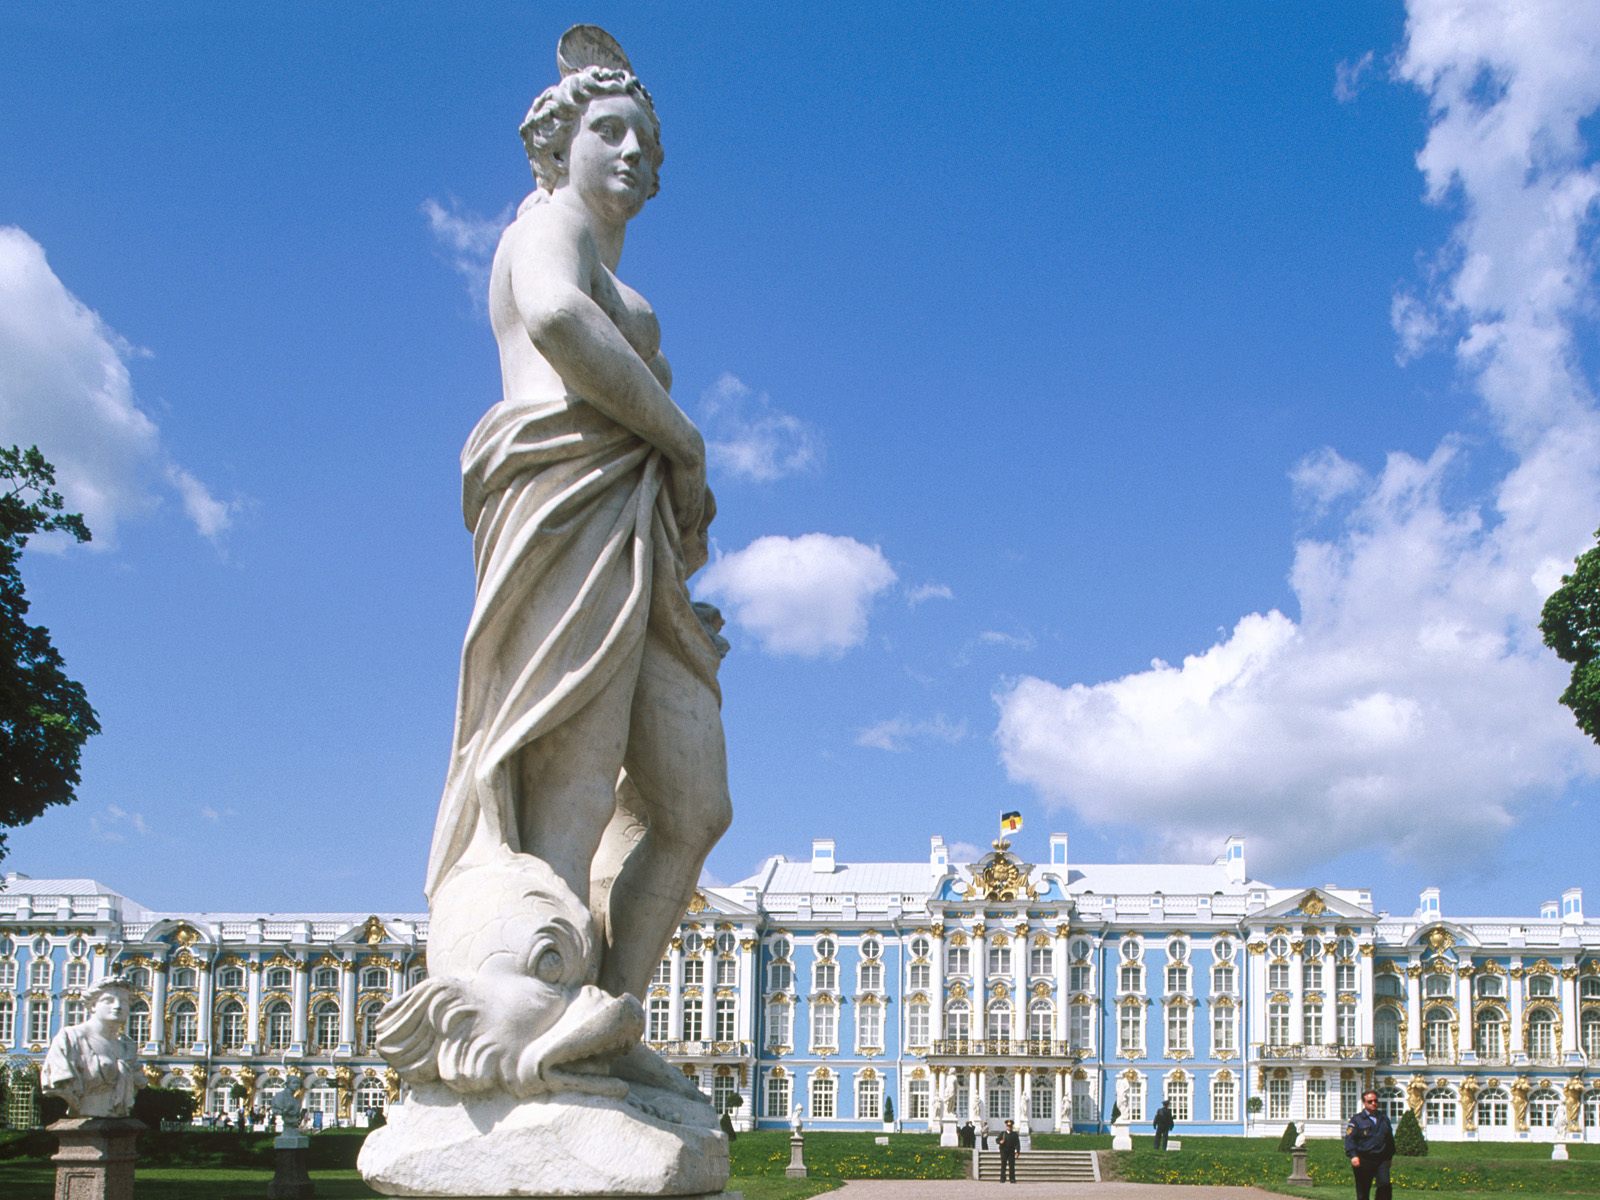 Catherine Palace St. Petersburg